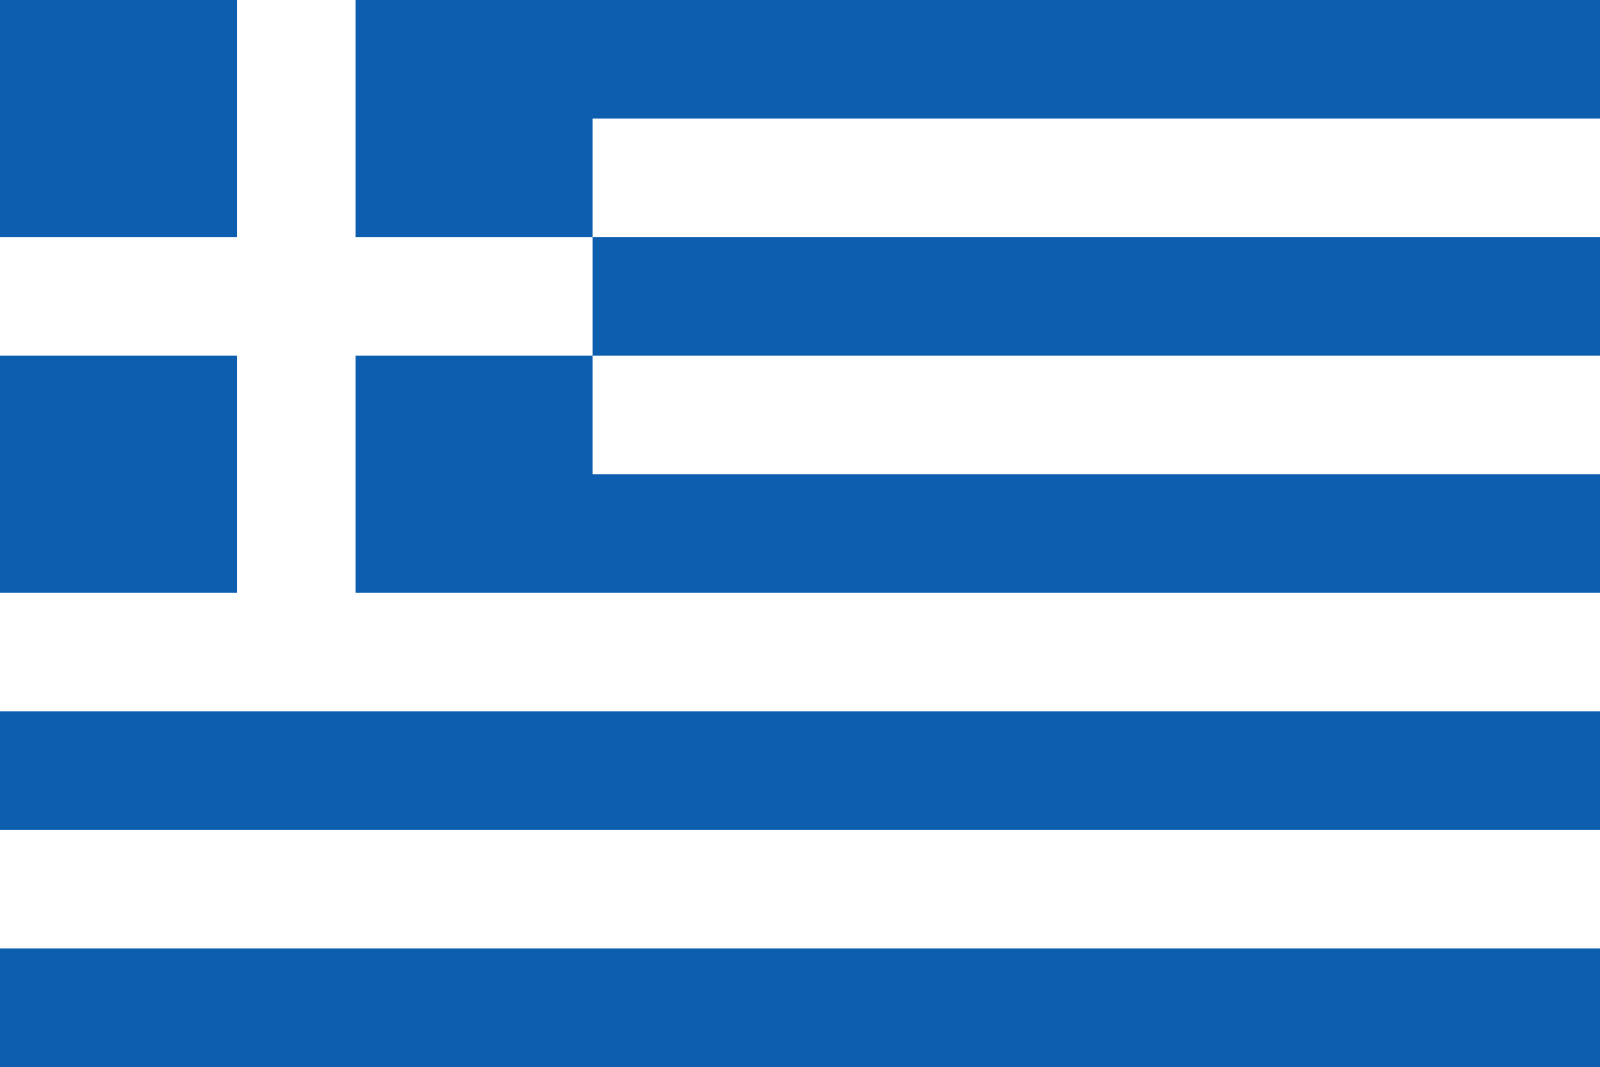 Bild der Staatsflagge Griechenland - mit einer Auflösung von 1600x1067 - Europa